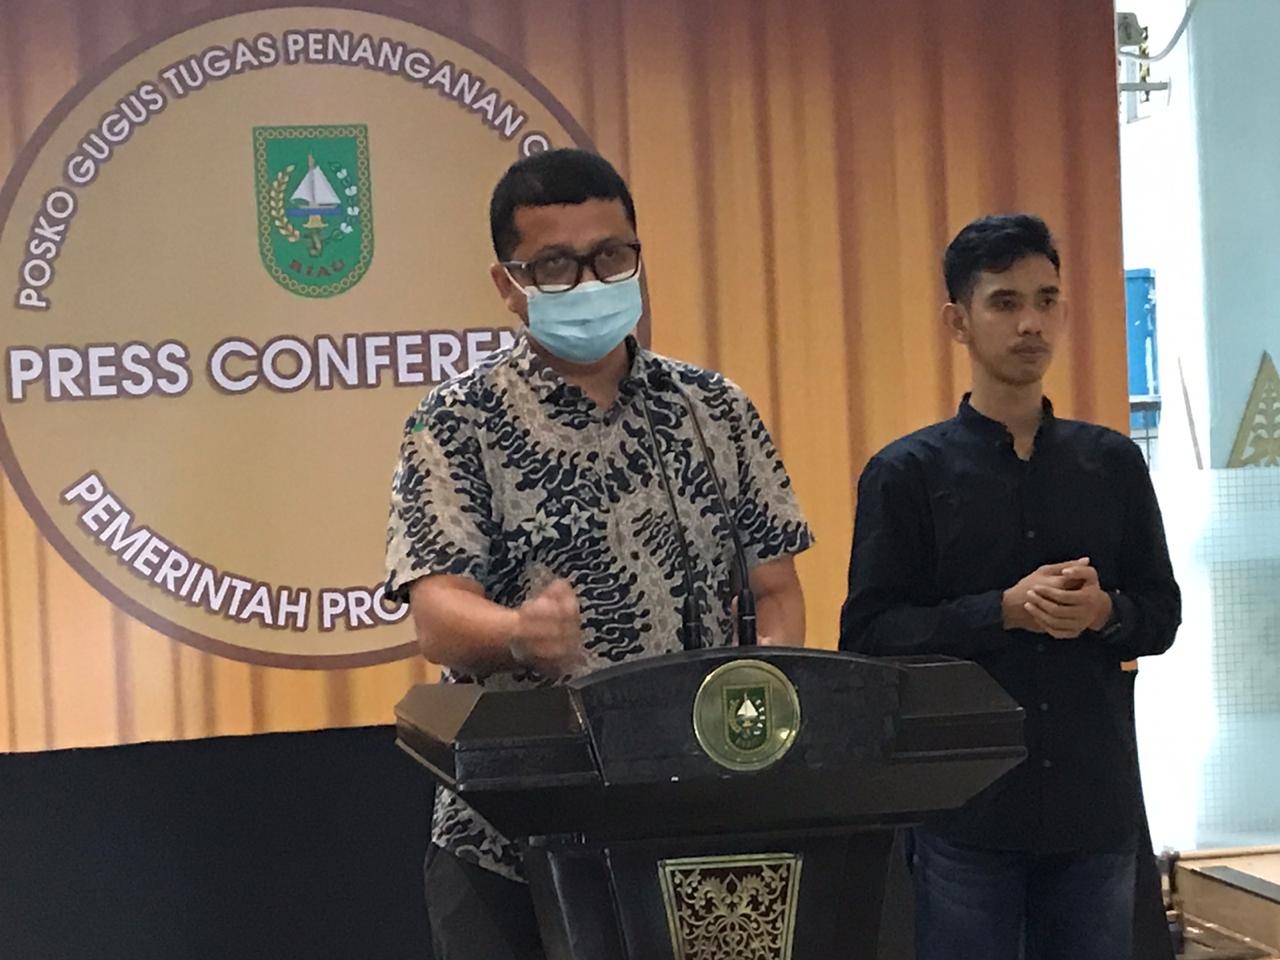 Pemprov Riau Mulai Kewalahan Atasi Covid-19, Jubir: Pekanbaru Jadi Kekhawatiran